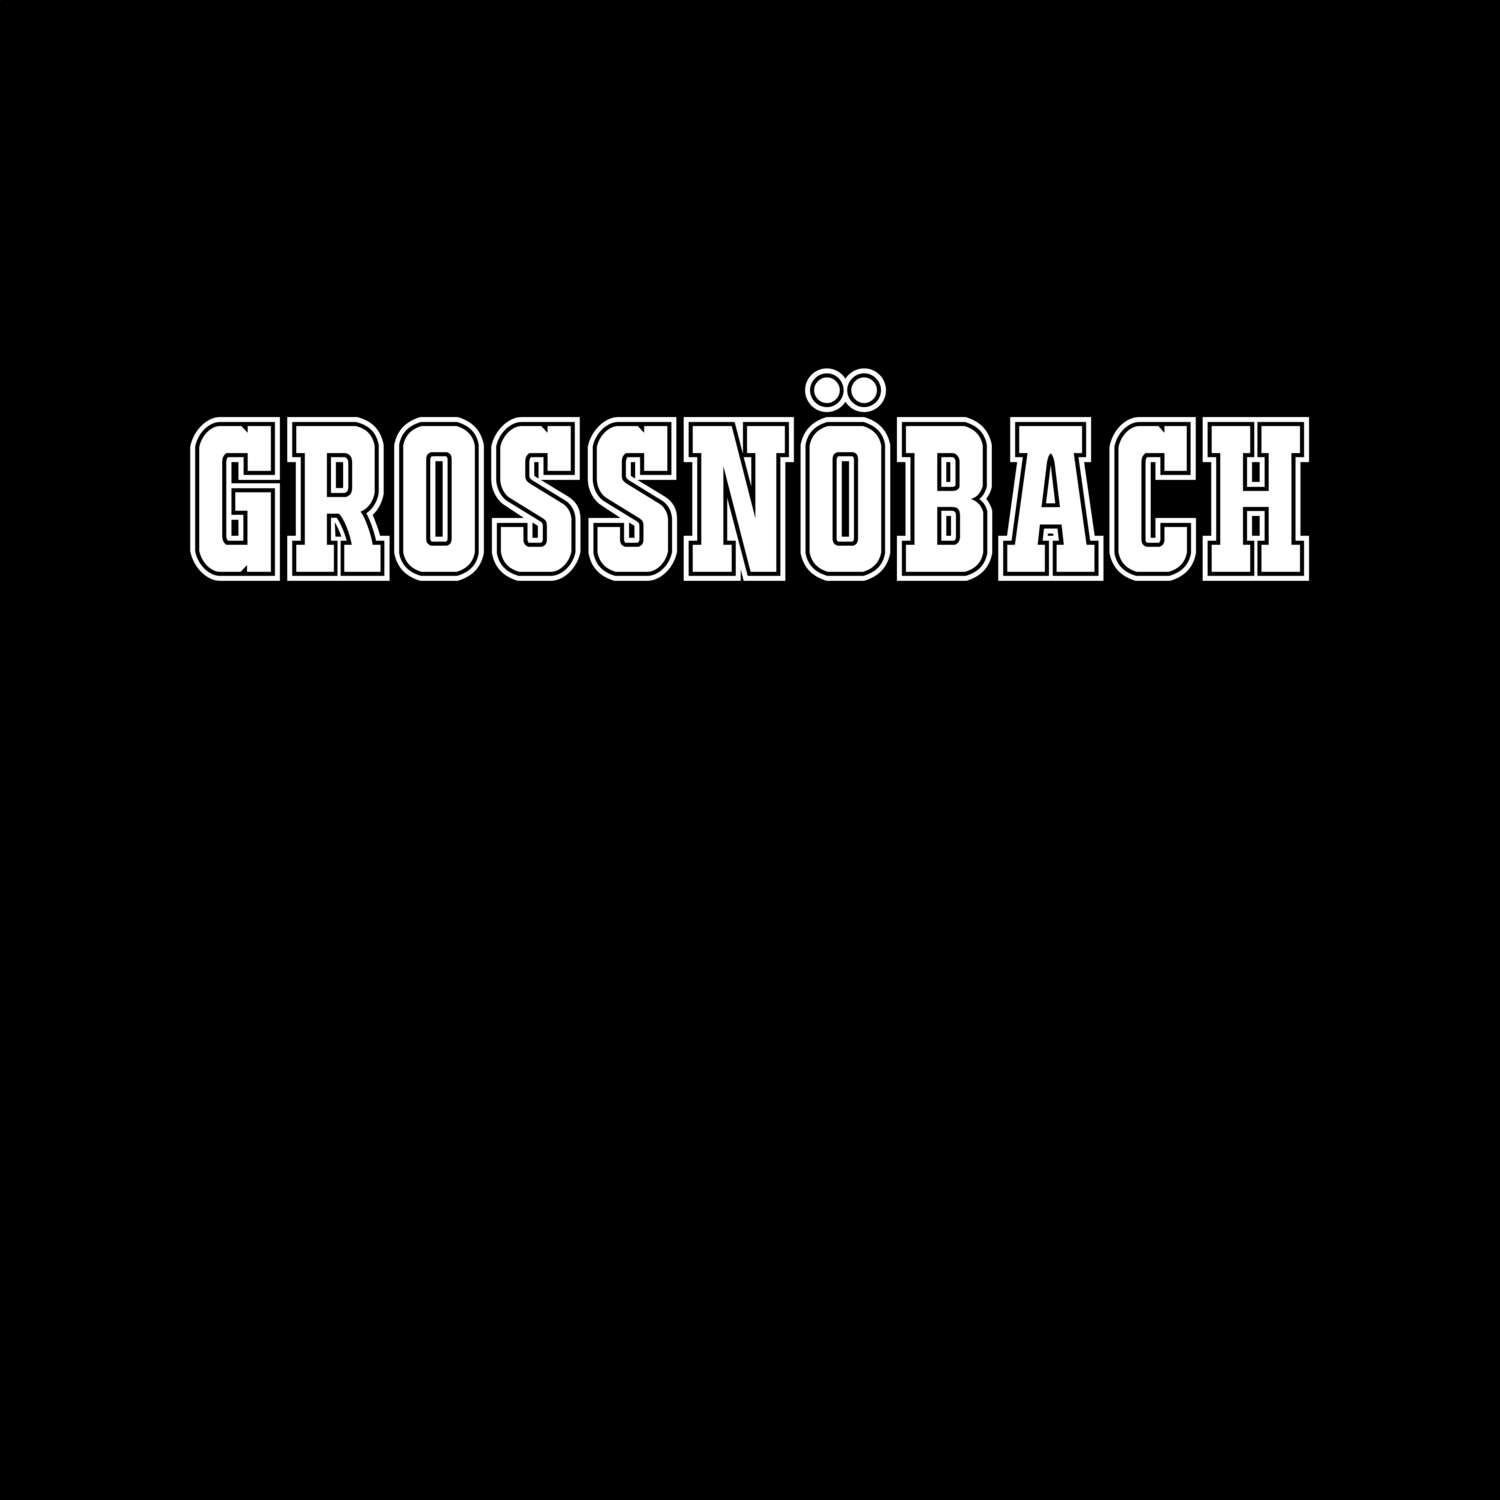 Großnöbach T-Shirt »Classic«